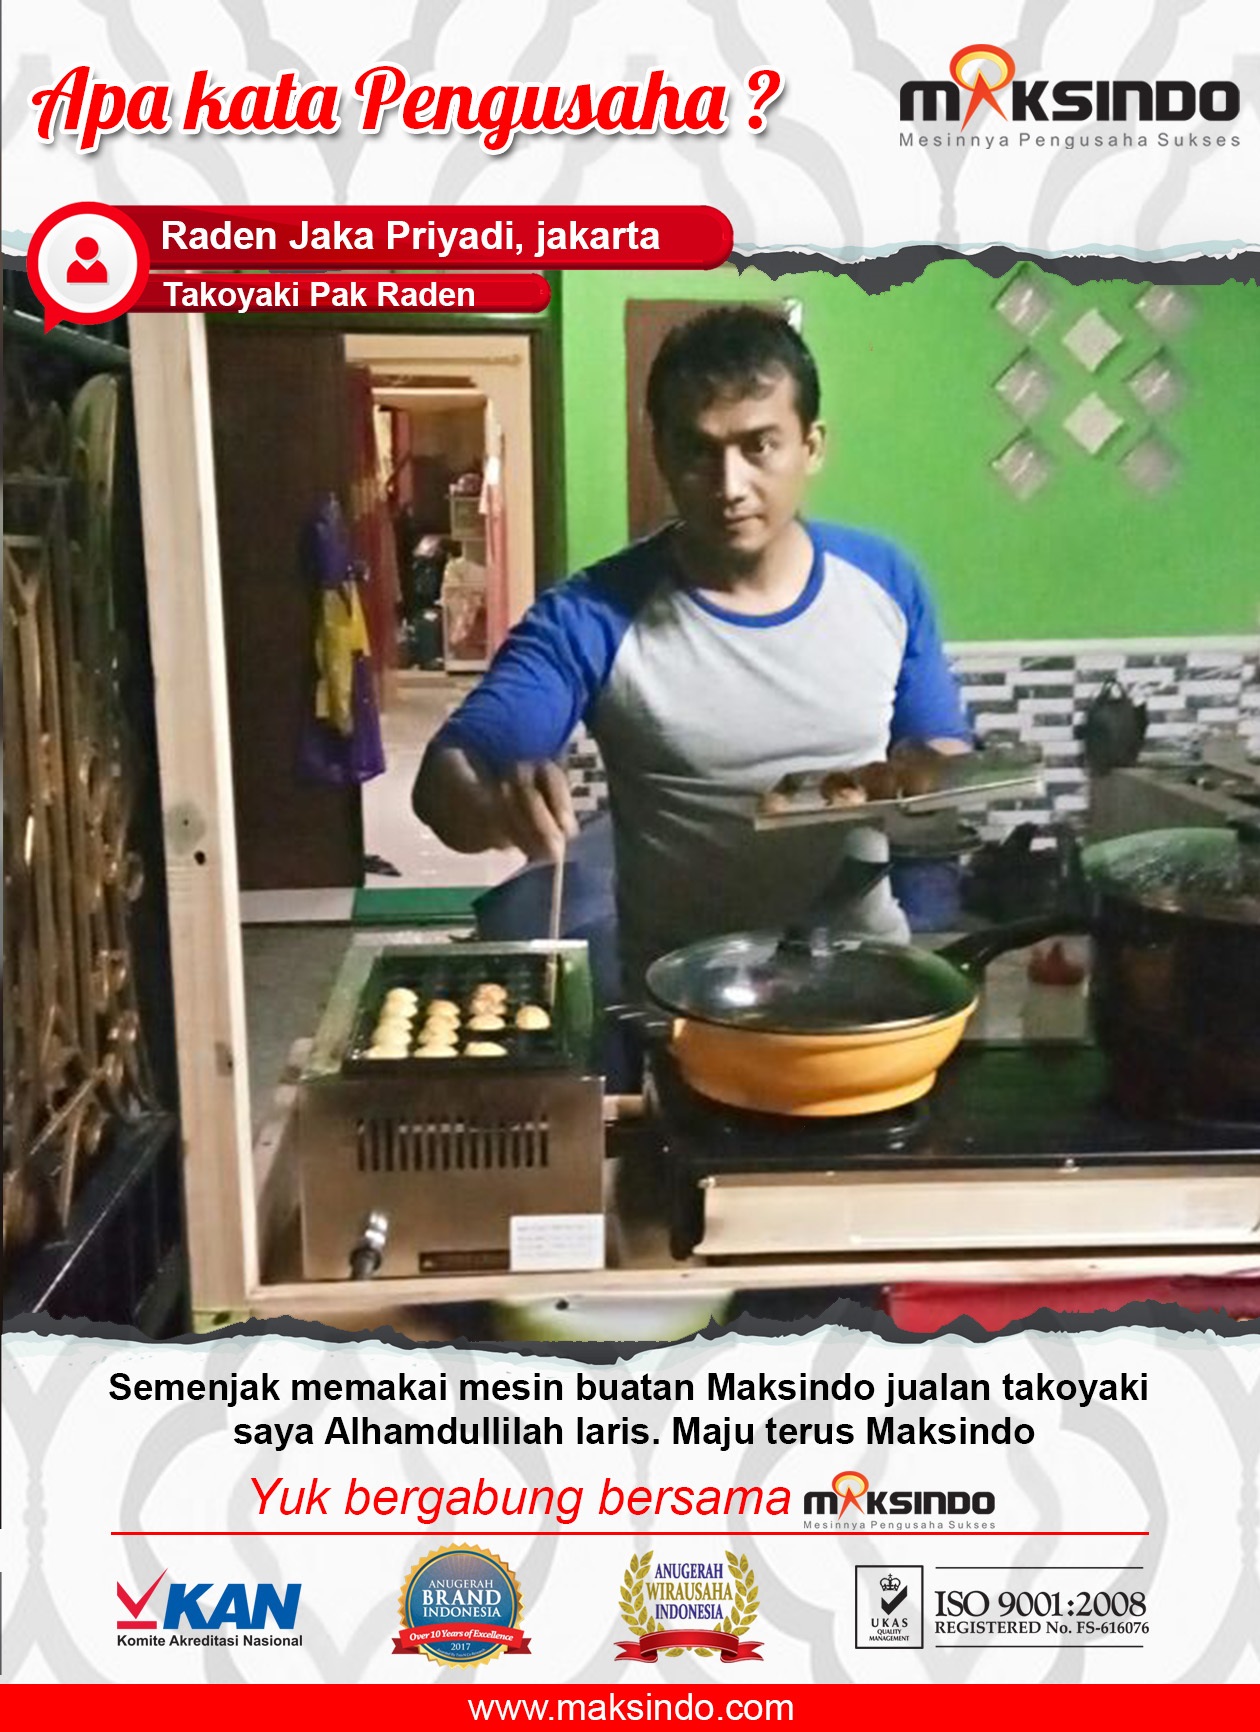 Takoyaki Pak Raden : Berkat Mesin Takoyaki Maksindo Usaha Saya Semakin Laris